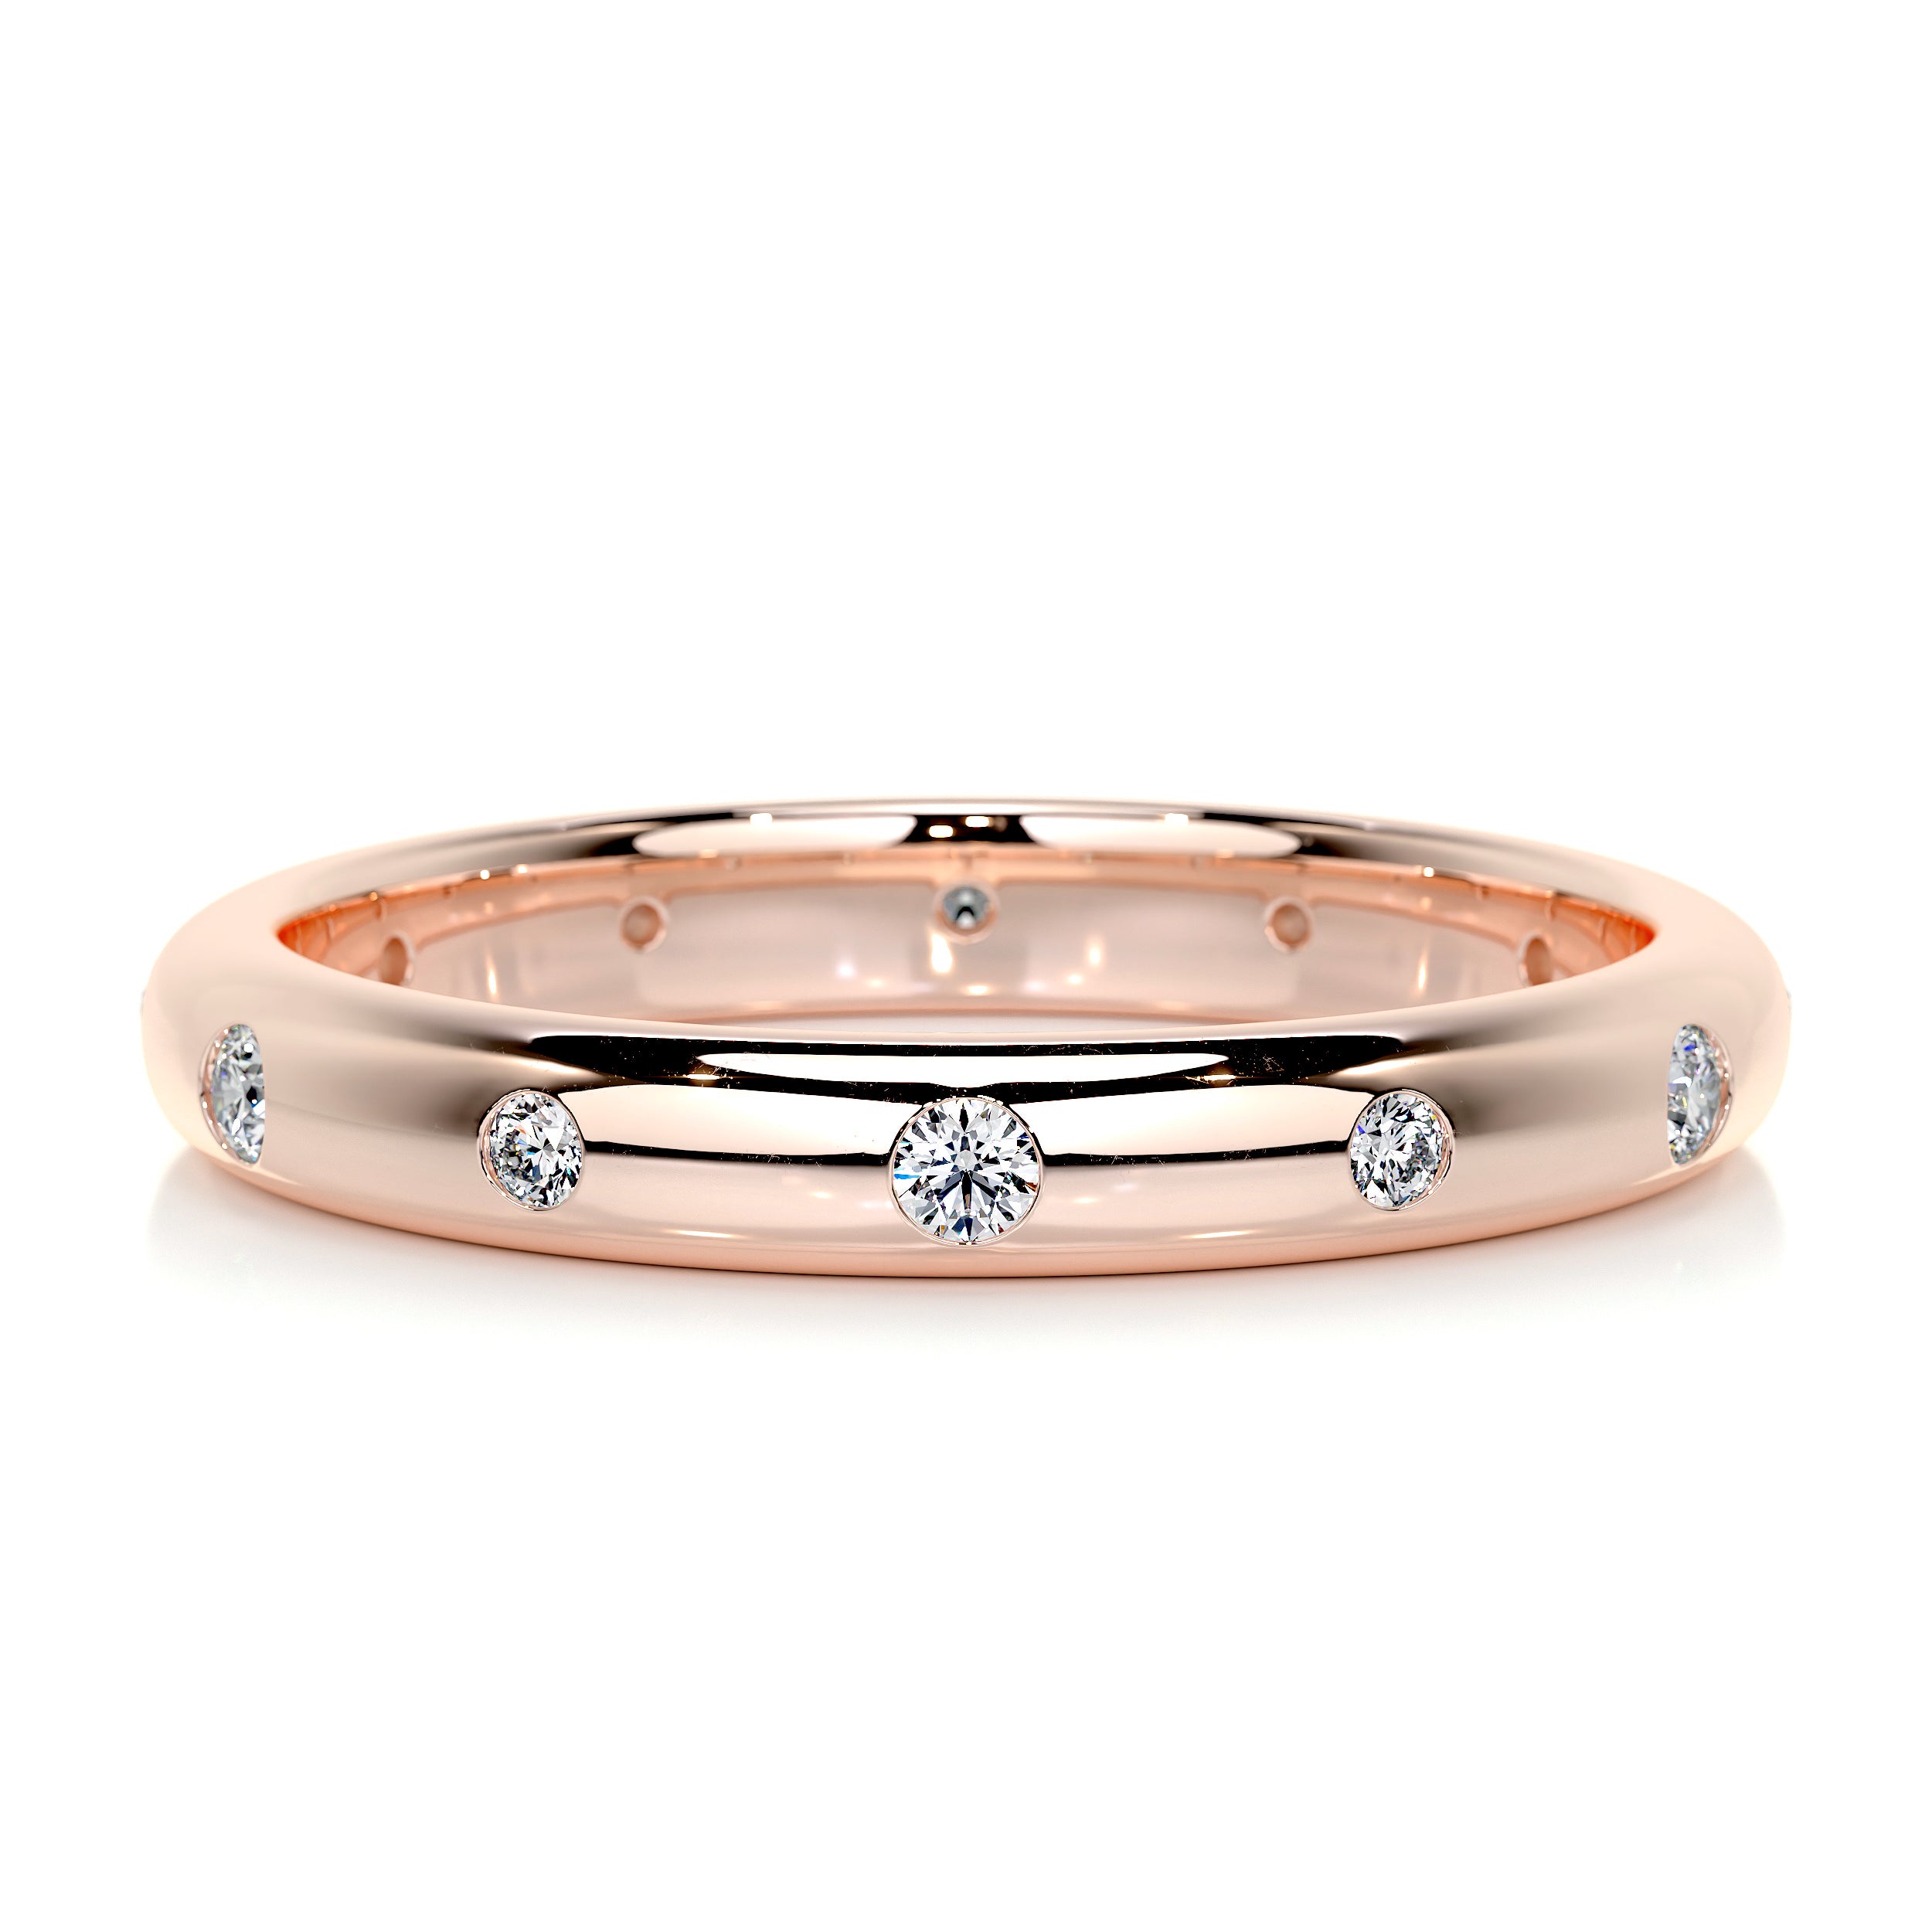 Zara Diamond Wedding Ring   (0.18 Carat) -14K Rose Gold